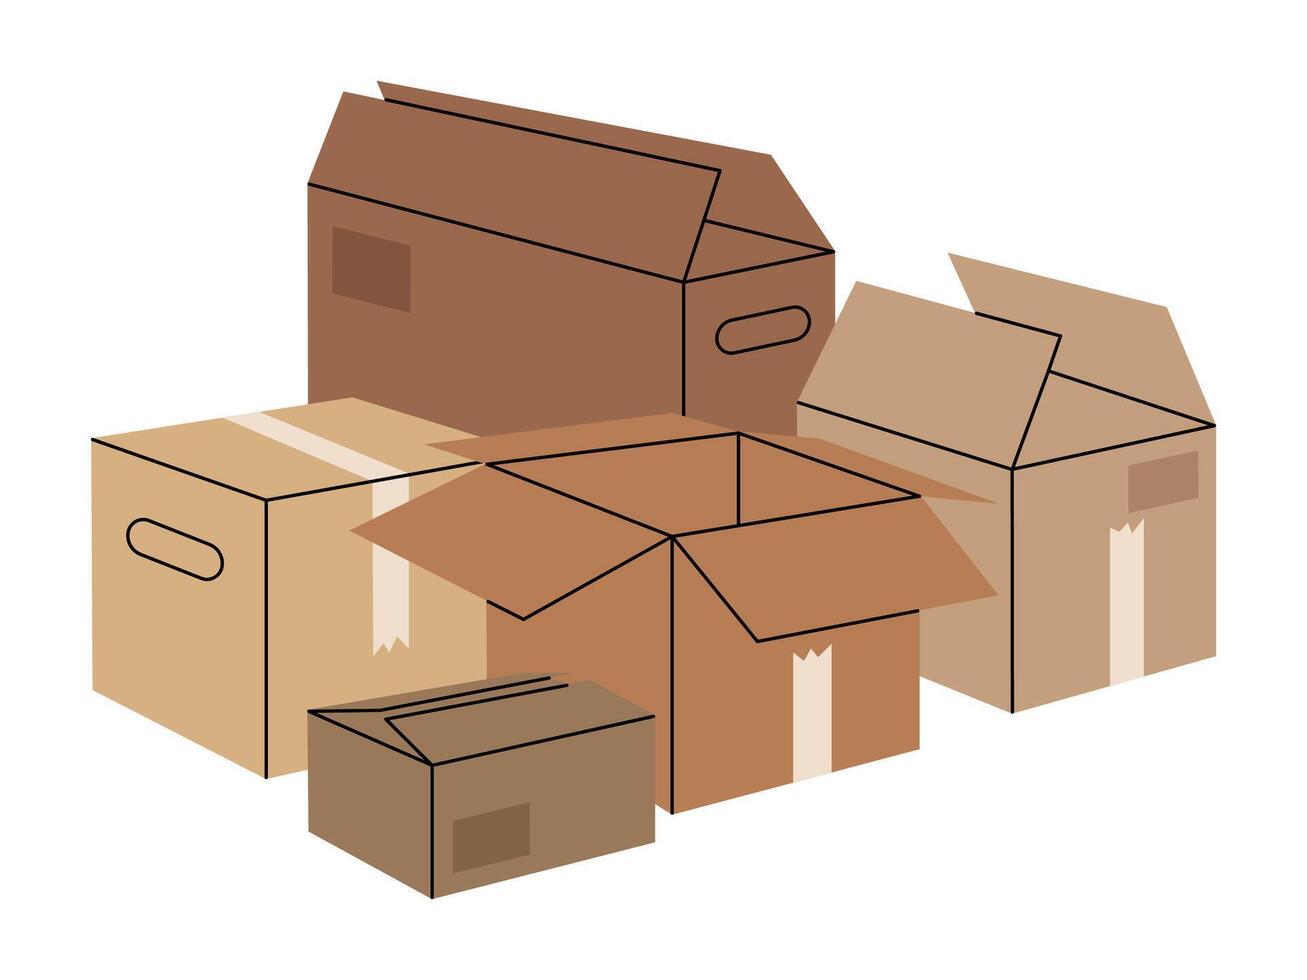 pakketjes stapel. hand- getrokken karton dozen, gestapeld lading dozen, karton magazijn doos stack vlak illustratie. in beweging of levering concept vector